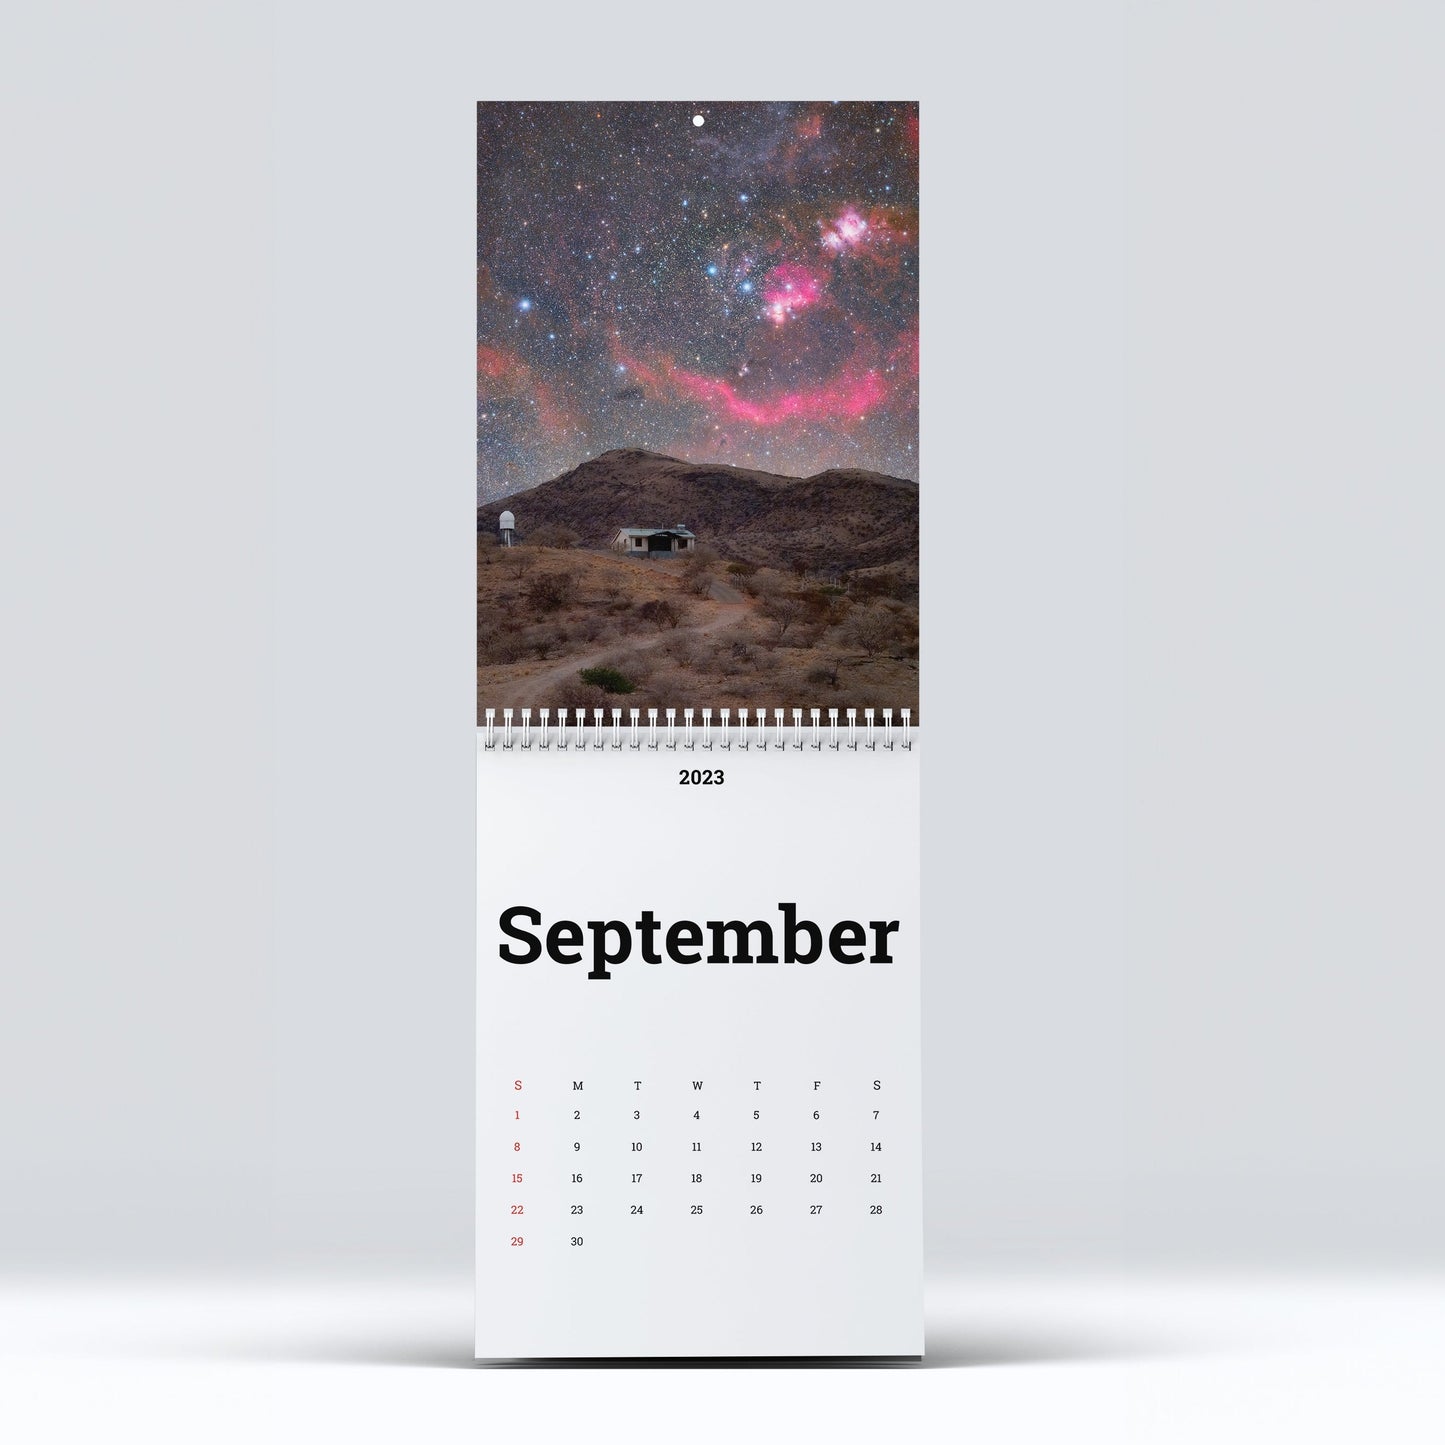 2024 Astro Calendar PRE-ORDER